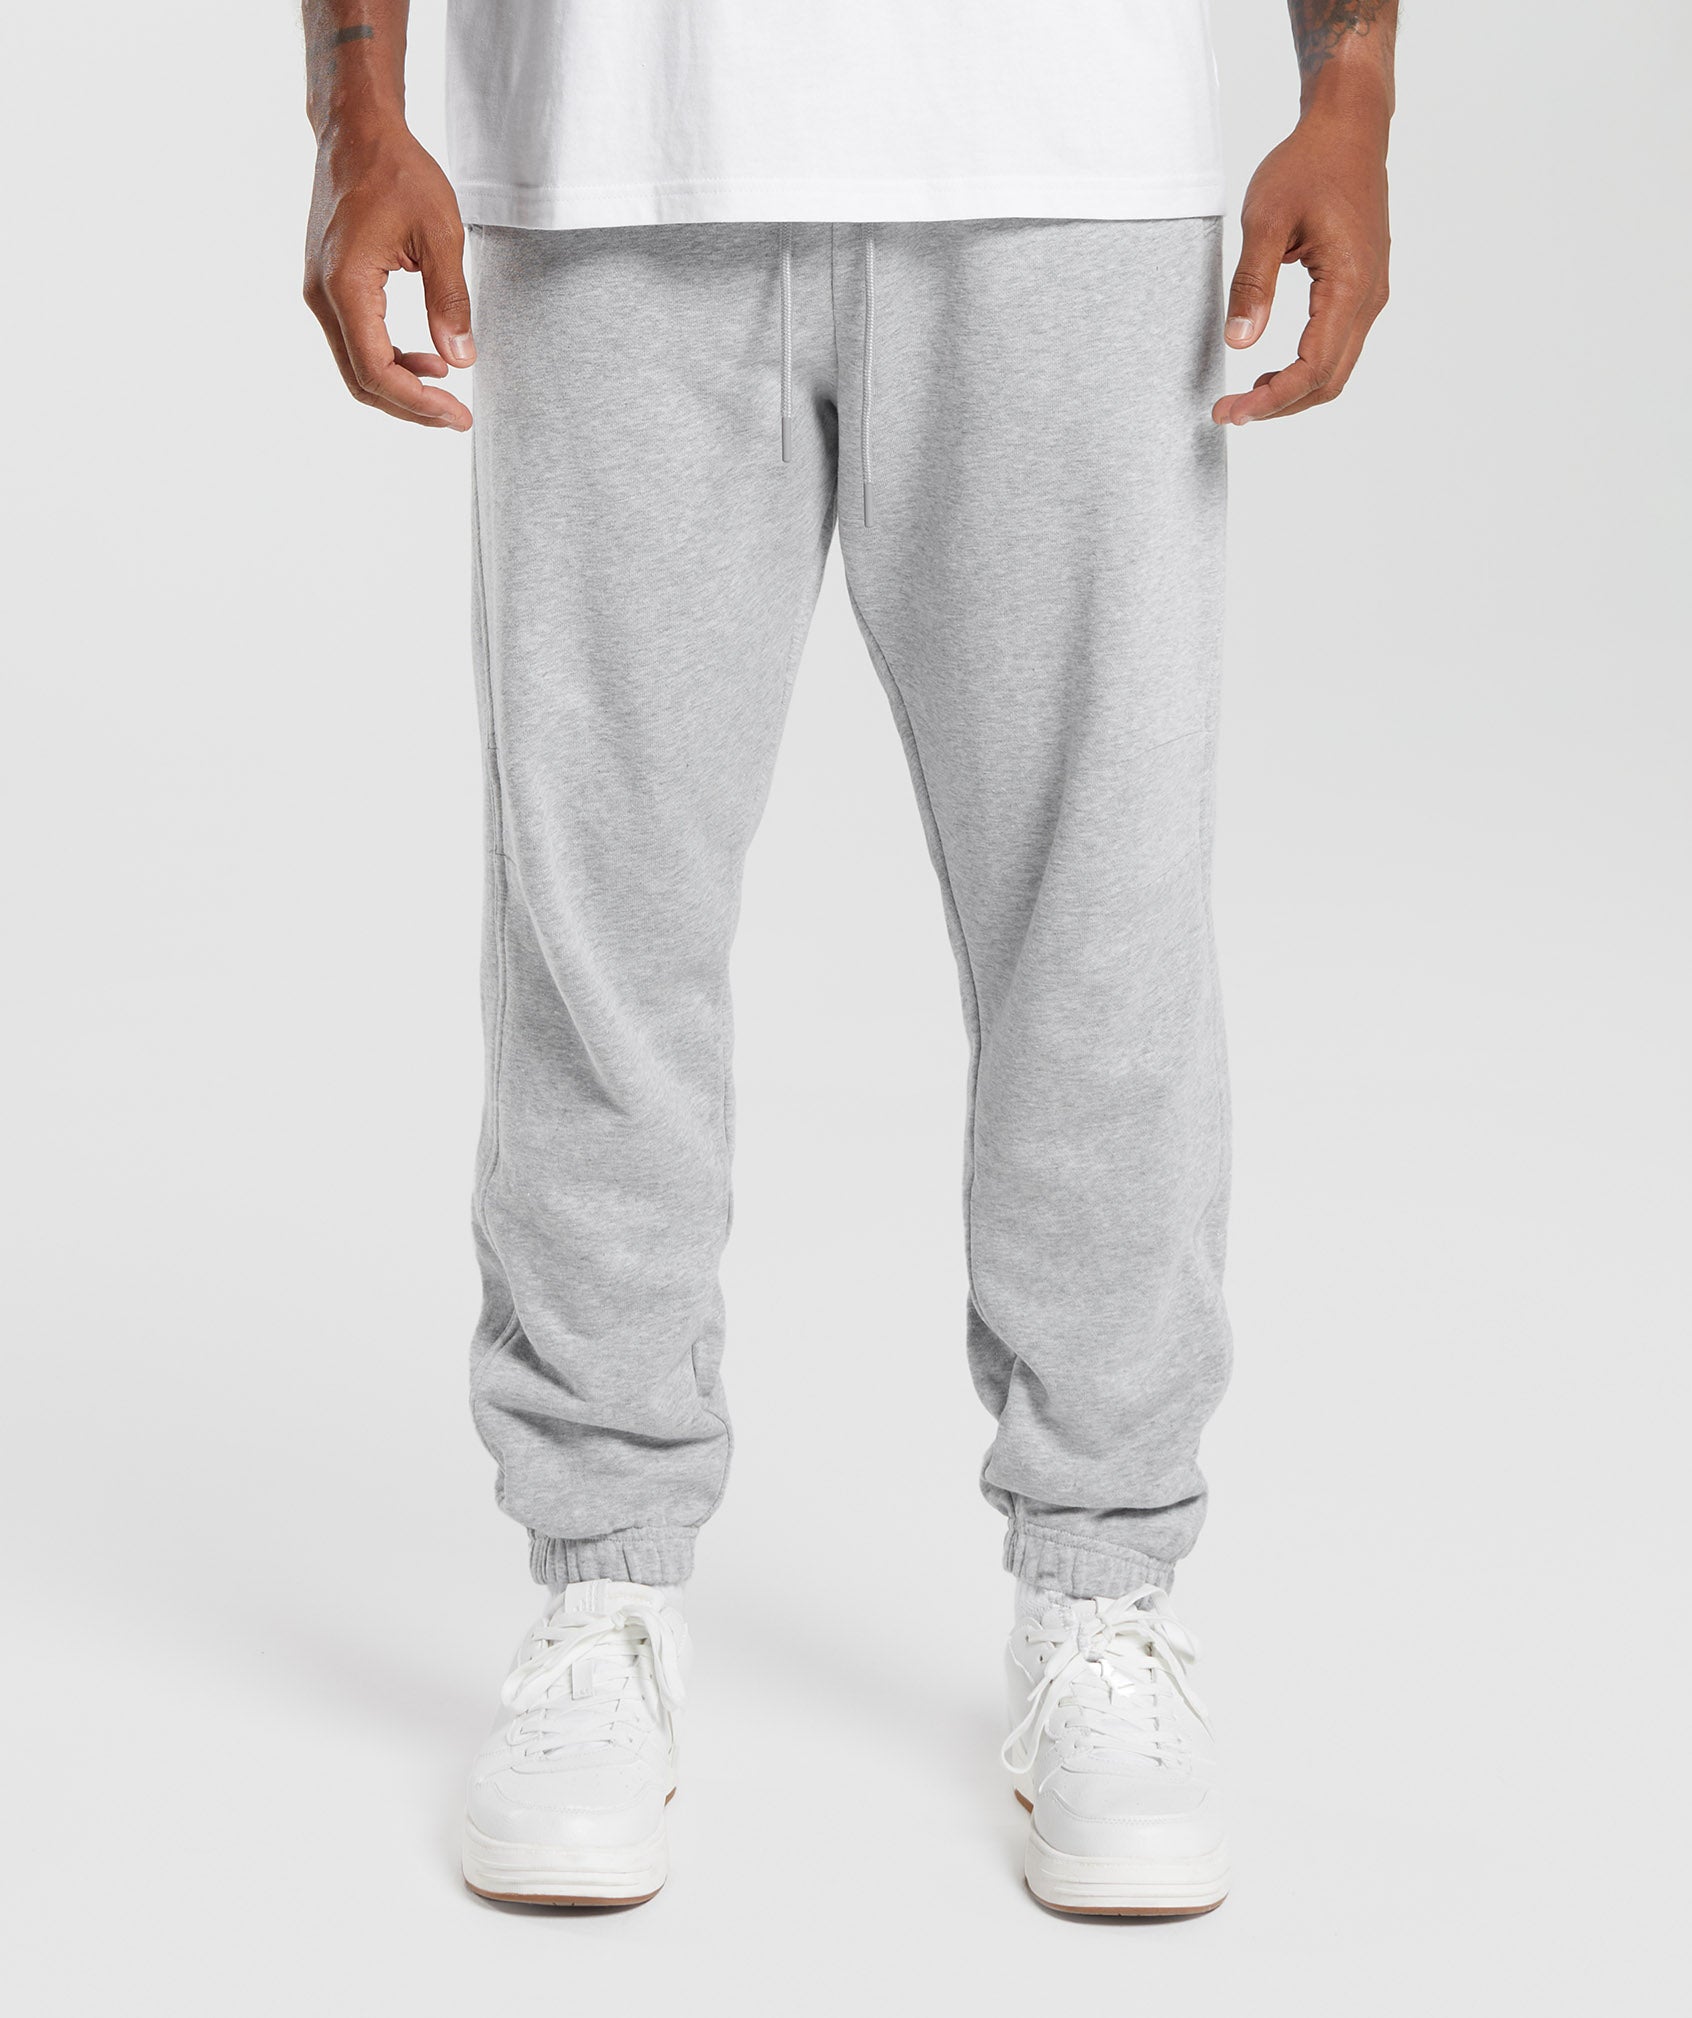 Men's Grey Sweatpants & Joggers